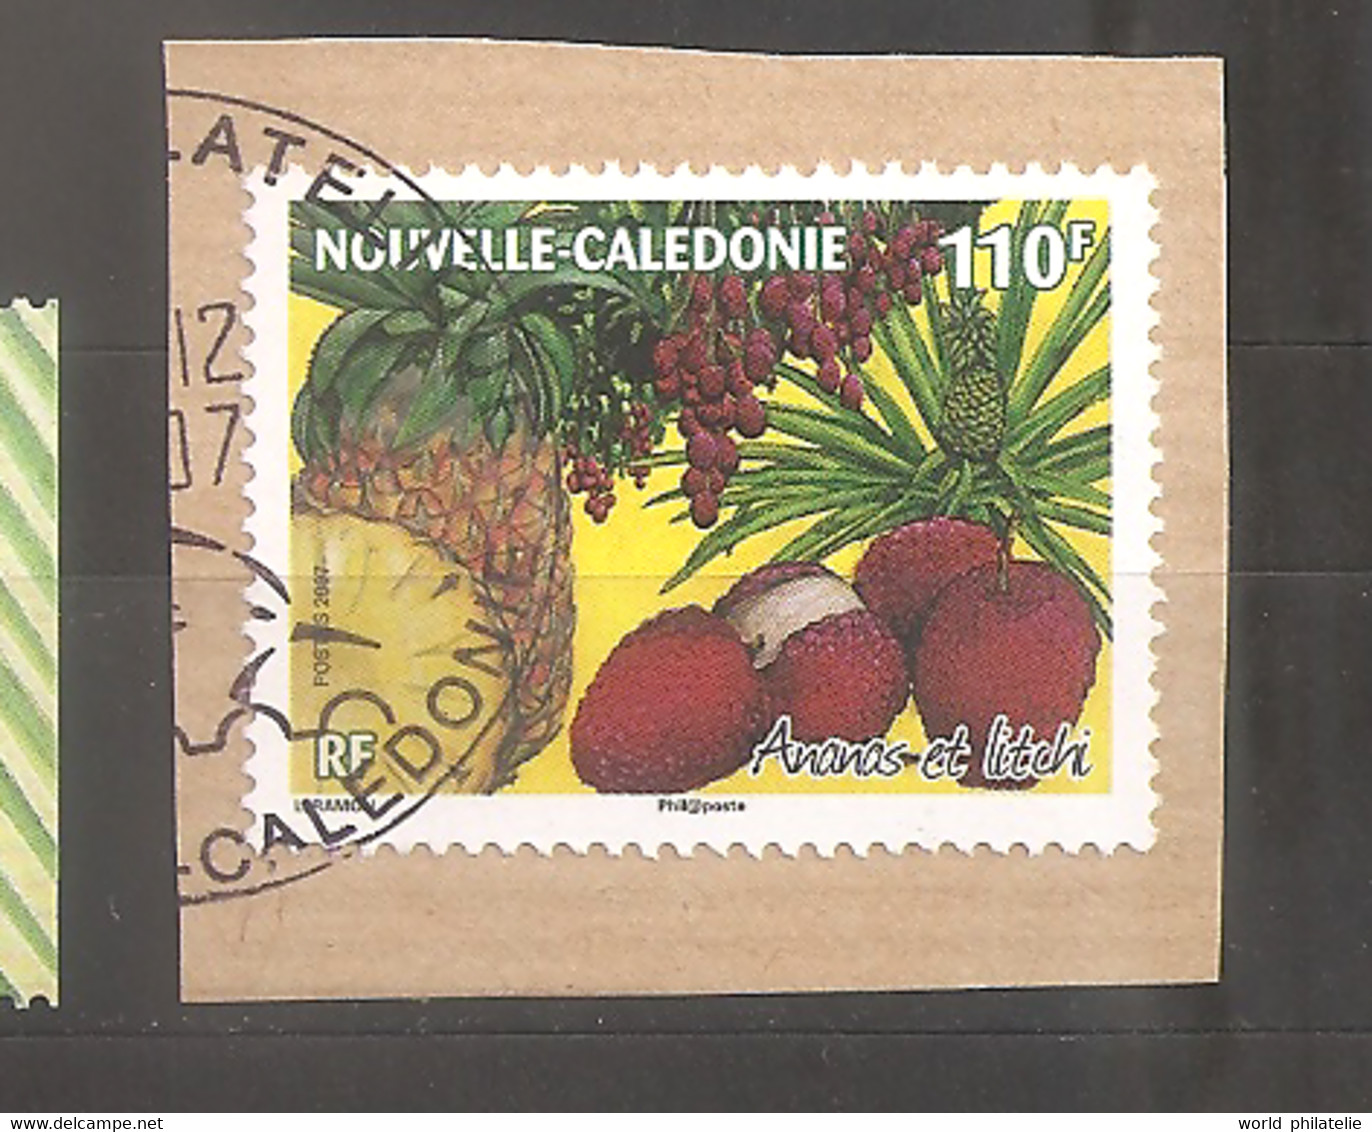 Nouvelle-Calédonie 2007 N° 1028 Iso O Fruits Tropicaux, Timbre Parfumé, Ananas, Litchi, Odeur, Alimentation, Papier - Gebraucht